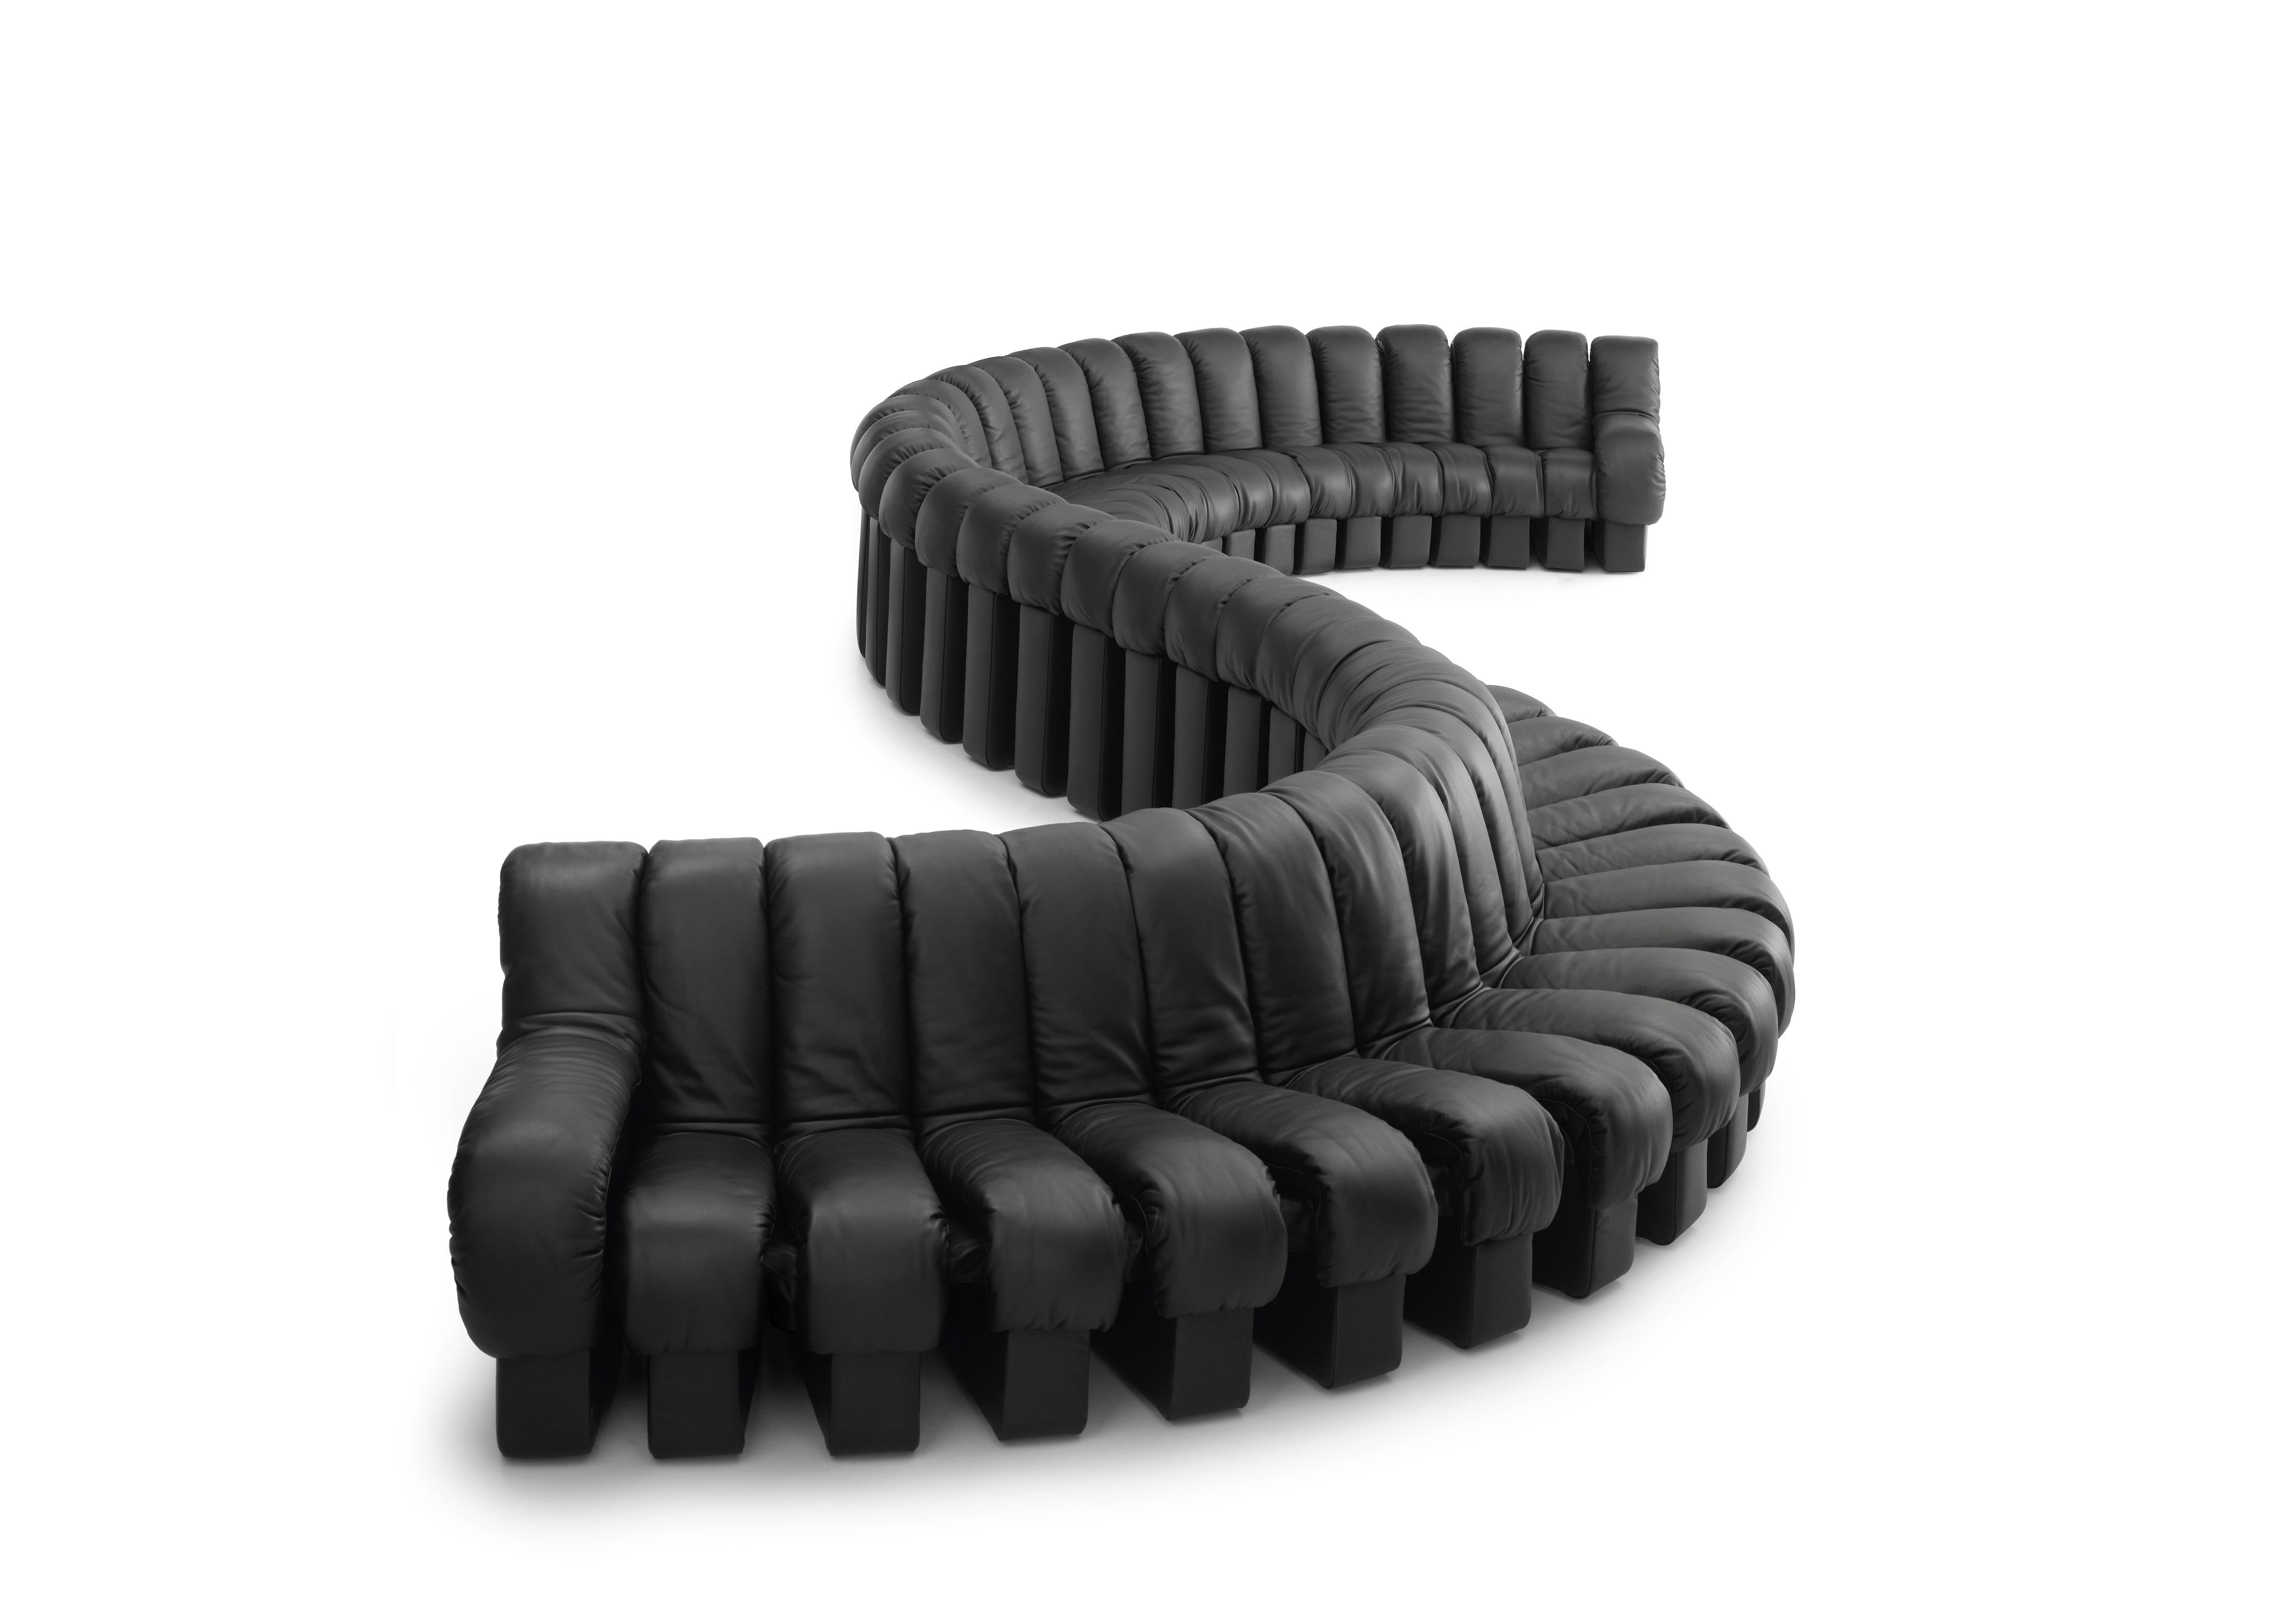 Cuir De Sede DS 600 'Snake' Seating Landscape with 80 Elements in Nappa Leather (Paysage de sièges 'serpent' avec 80 éléments en cuir nappa)  en vente